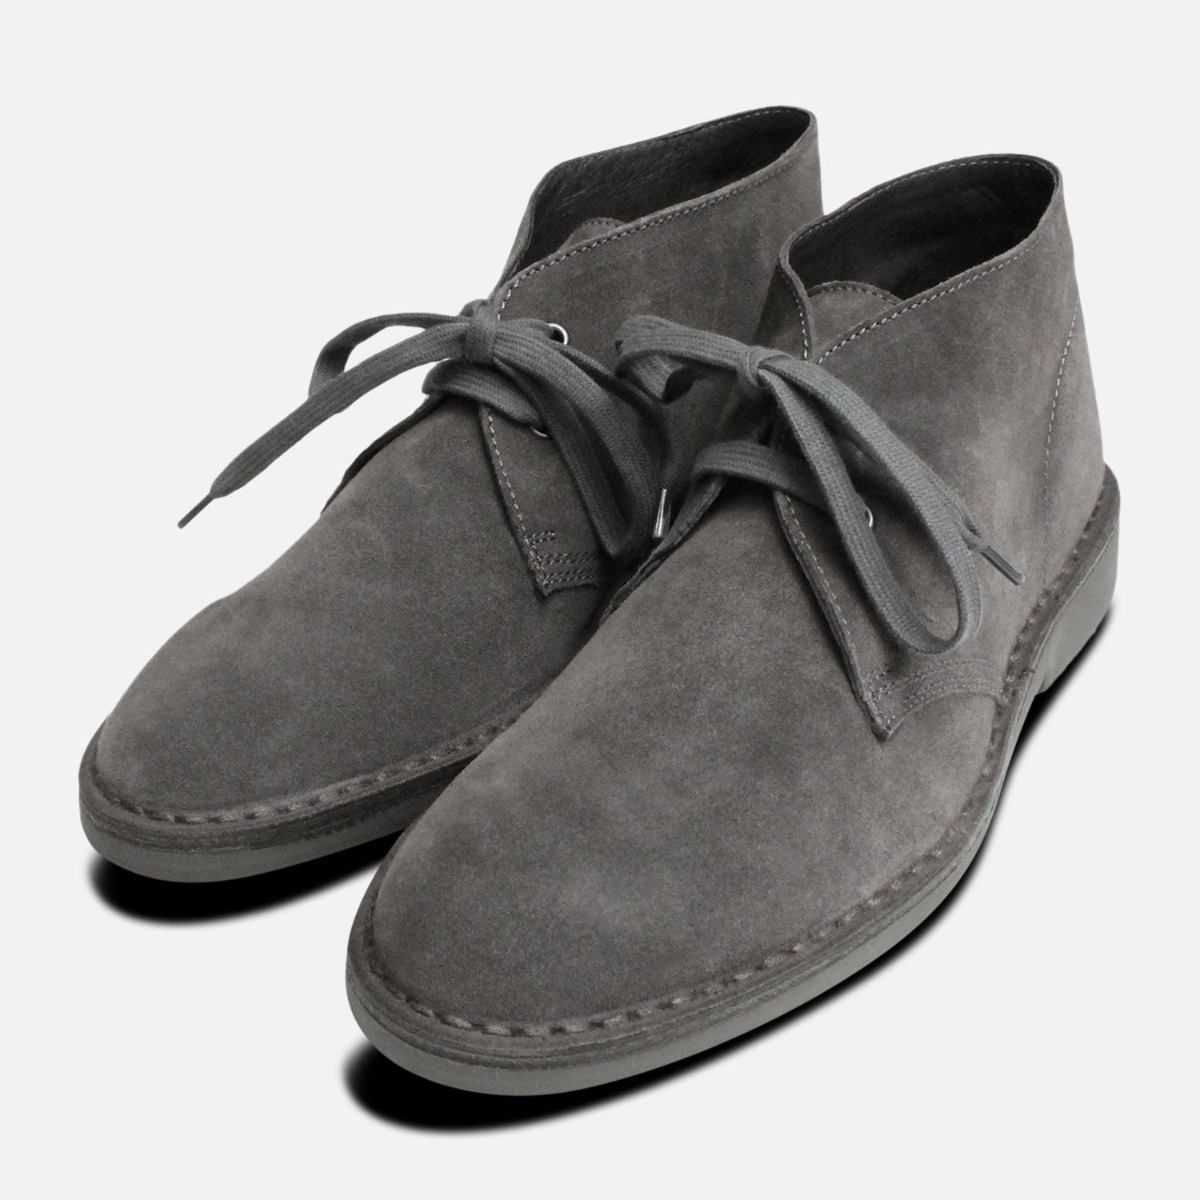 grey desert boots